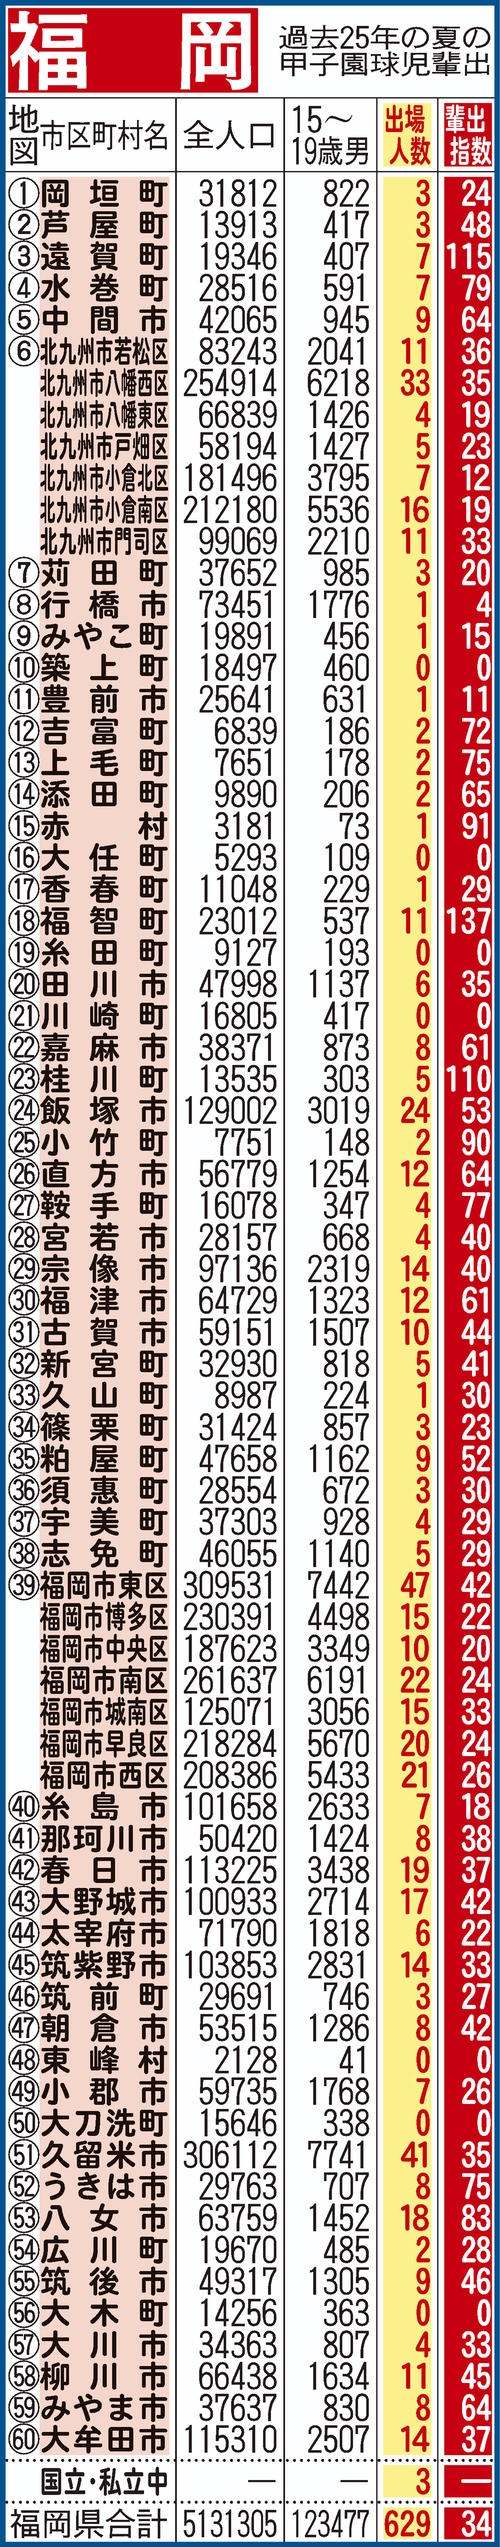 過去25年間における福岡県地域別の甲子園輩出指数